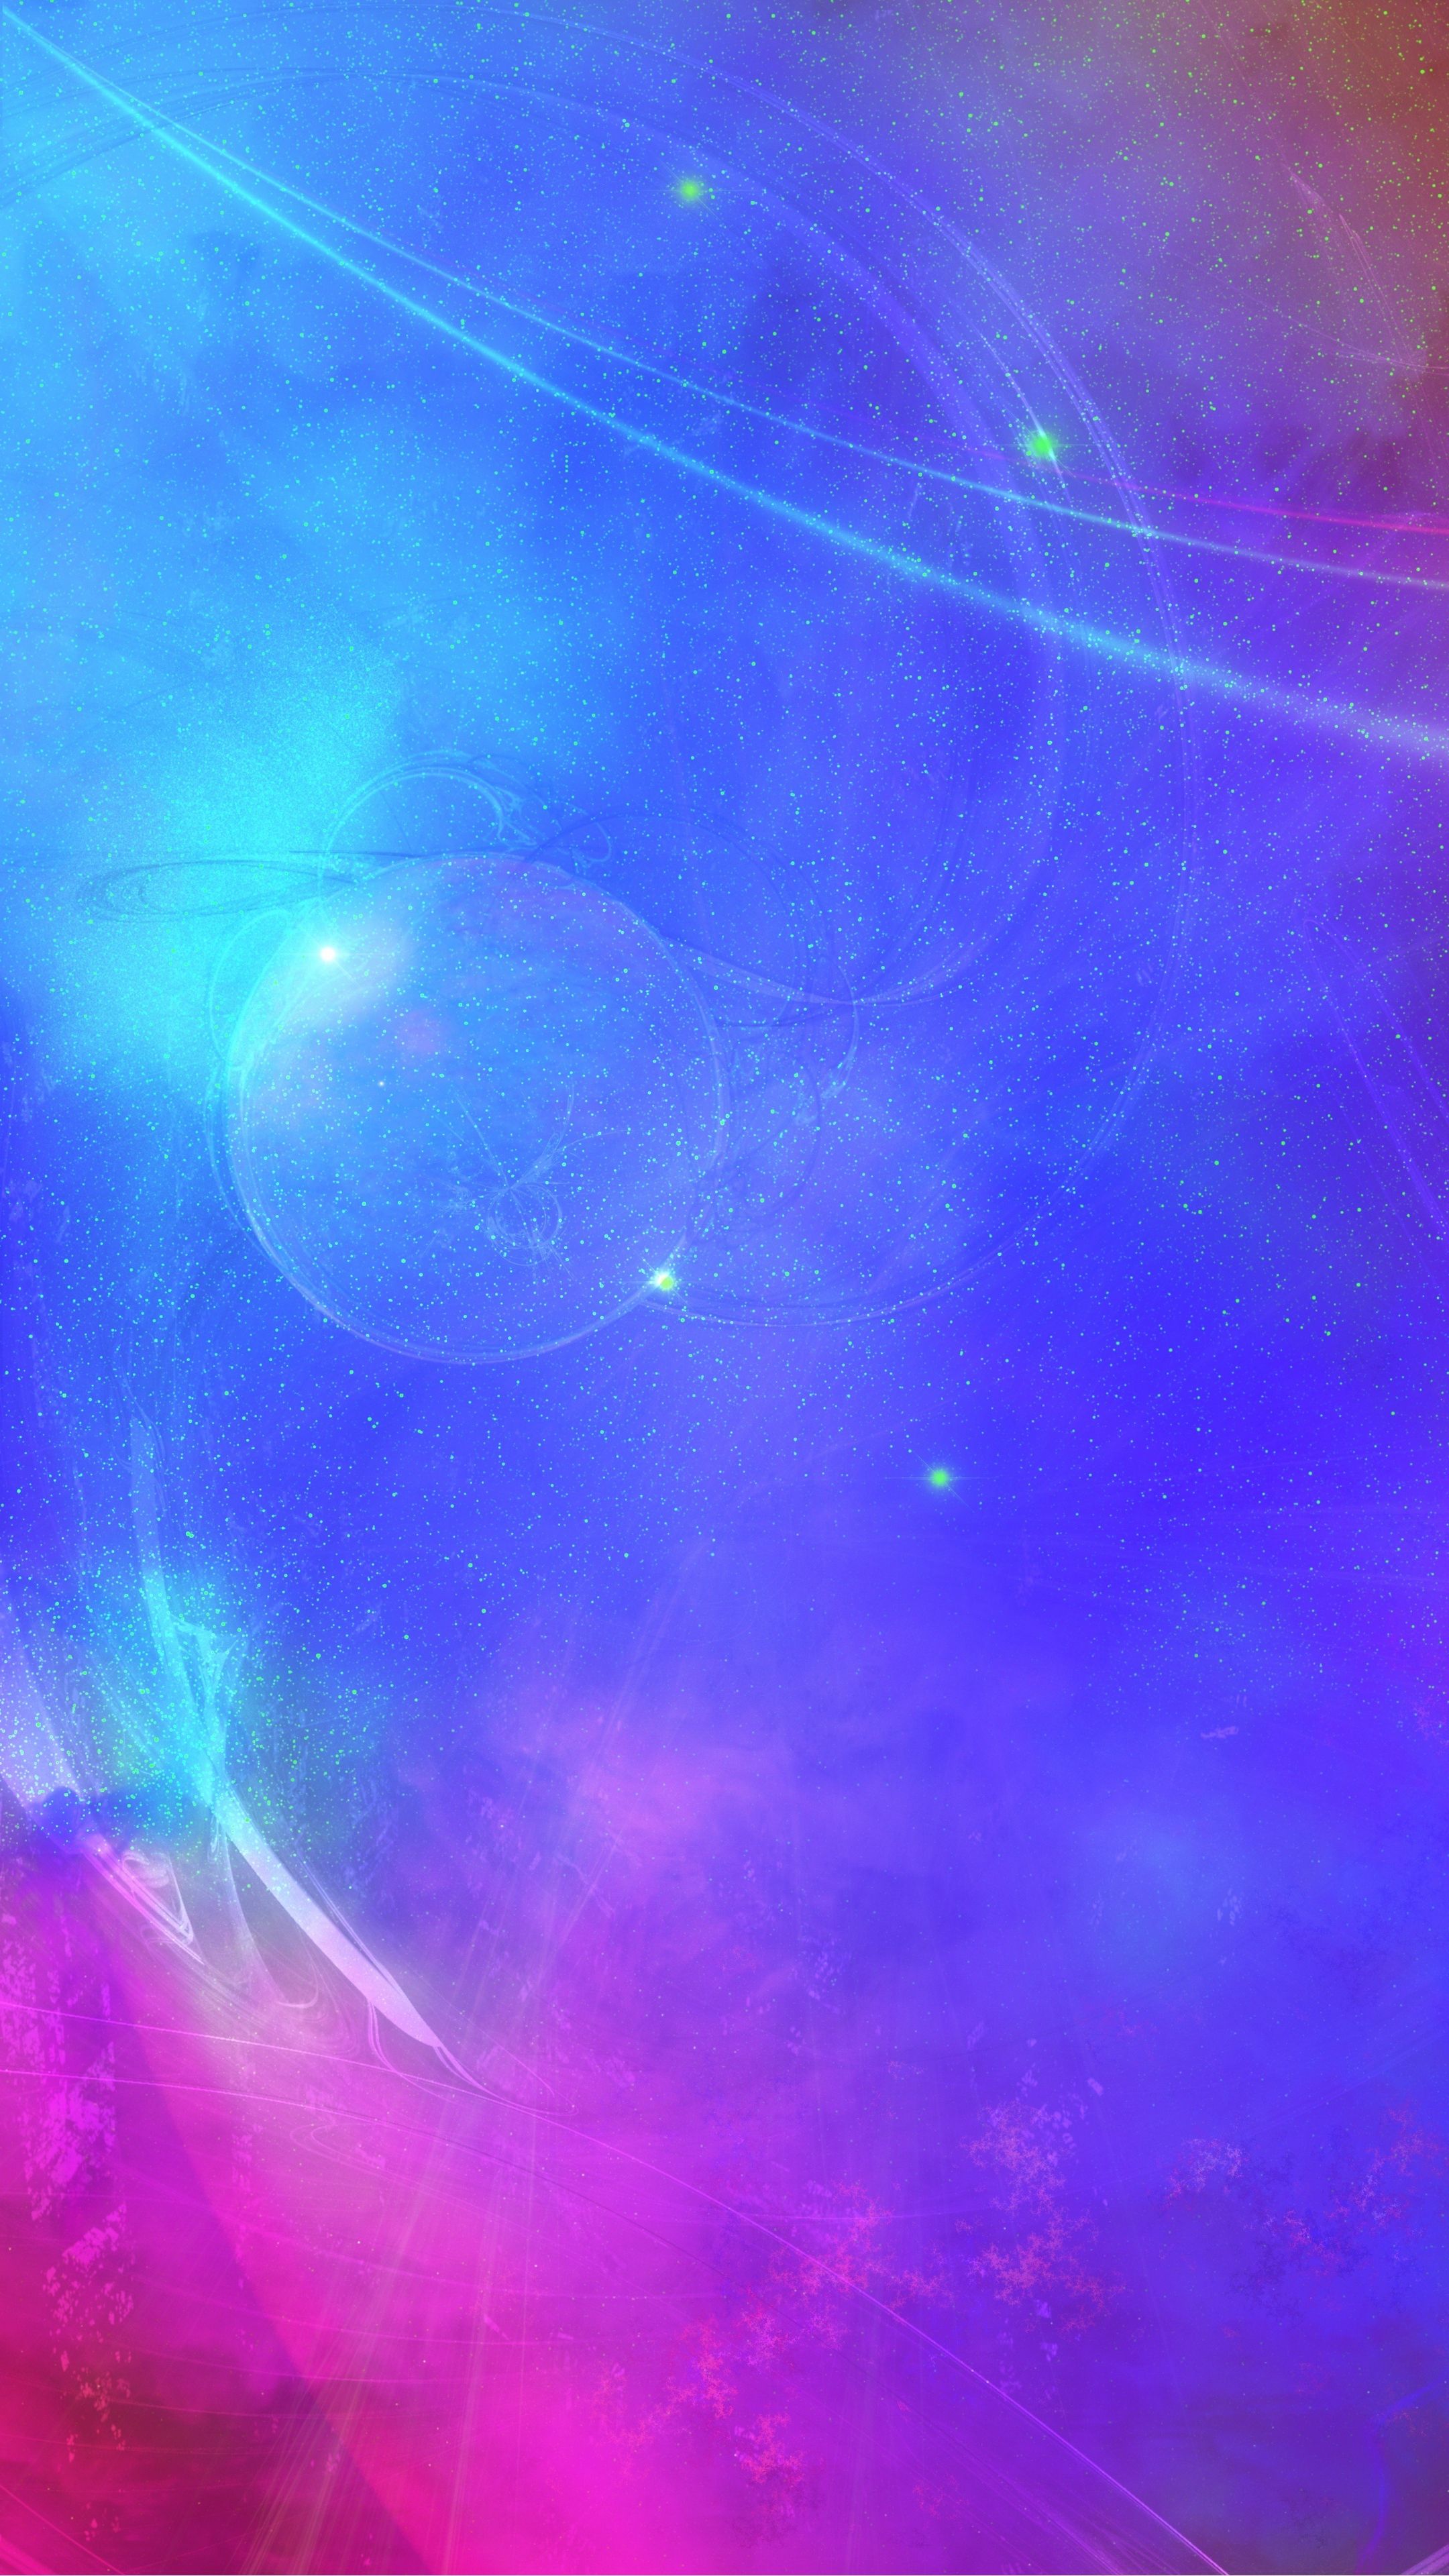 Hình nền đội sao ngân hà: Bạn có muốn lấp lánh với vẻ đẹp tuyệt đẹp của ngân hà, bao gồm hàng ngàn vì sao và hành tinh chưa được khám phá? Hãy truy cập ngay để khám phá các hình nền đội sao ngân hà cực kỳ ấn tượng và đầy sắc màu, mang đến cho bạn một trải nghiệm tuyệt vời.